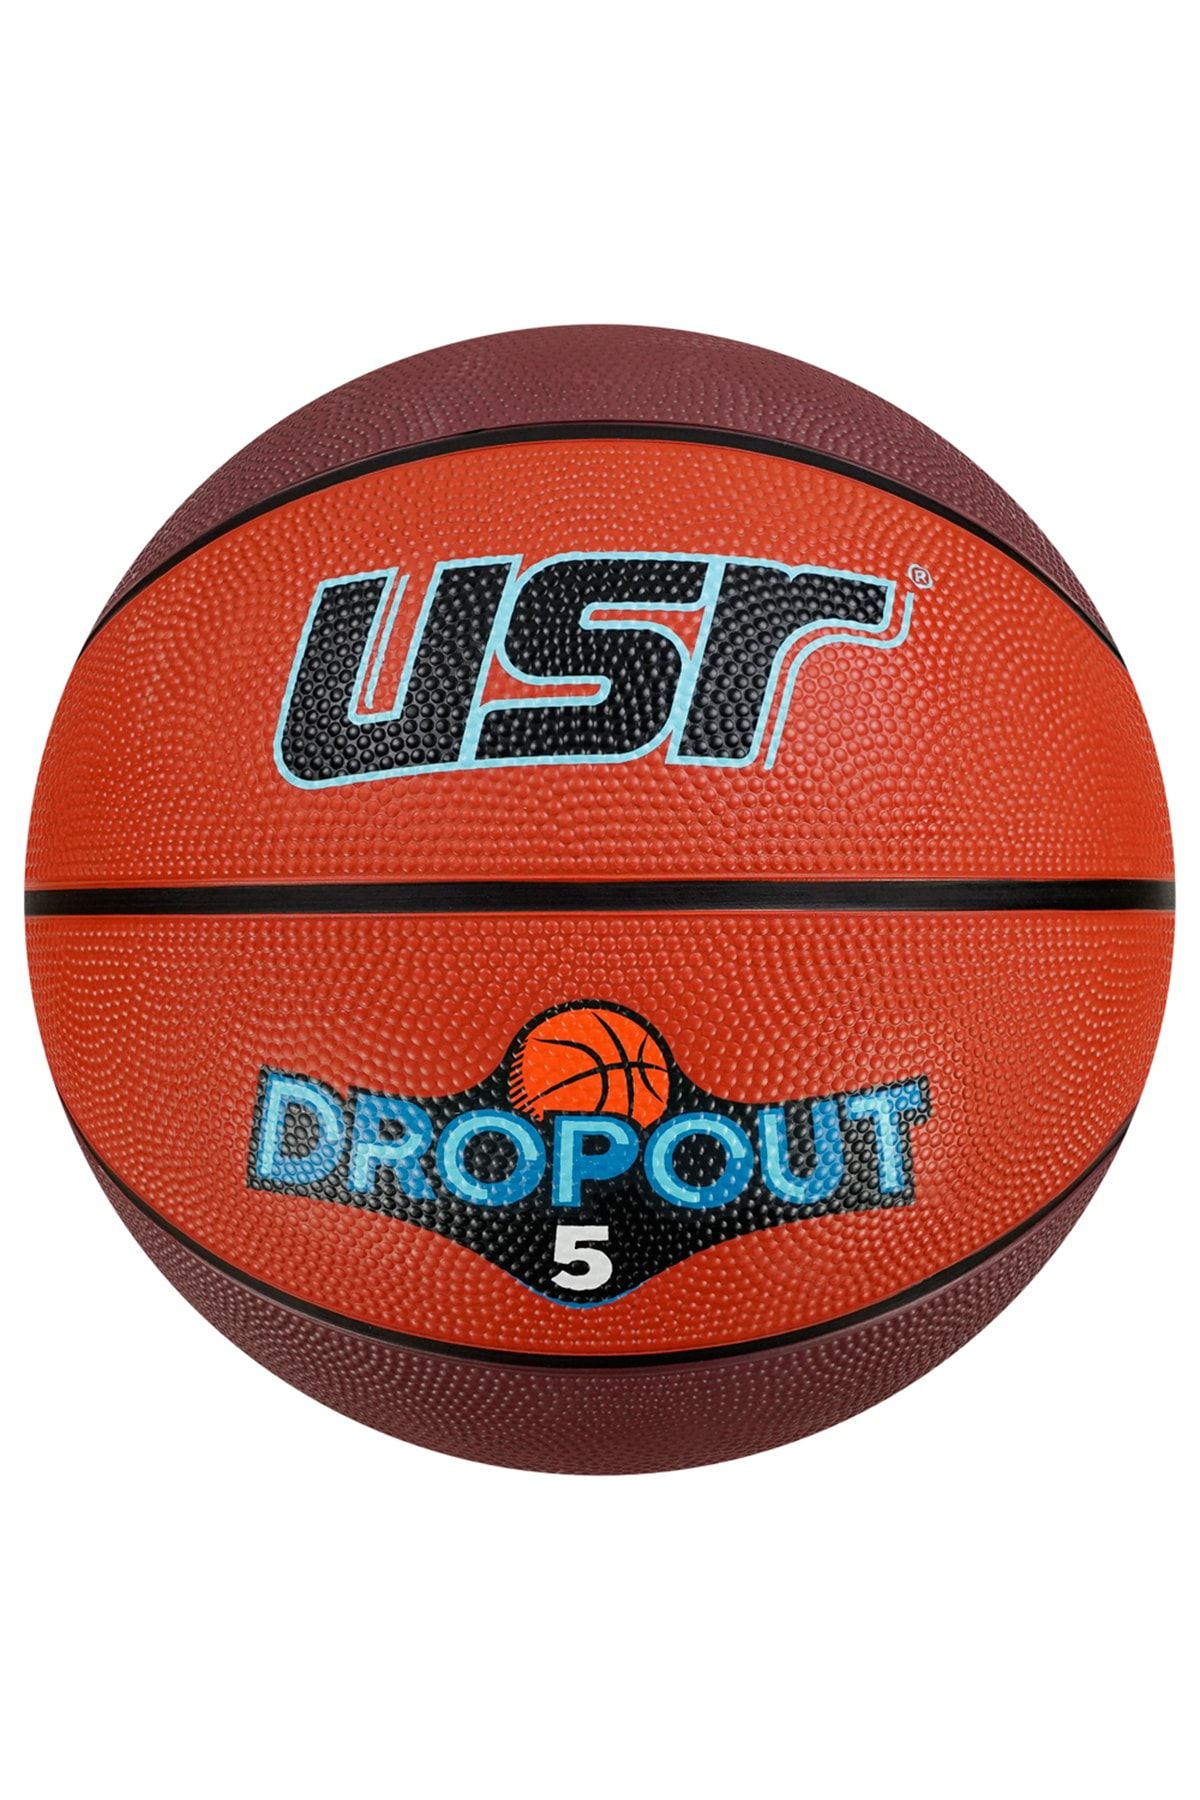 Usr Dropout5.1 5 No Basketbol Topu